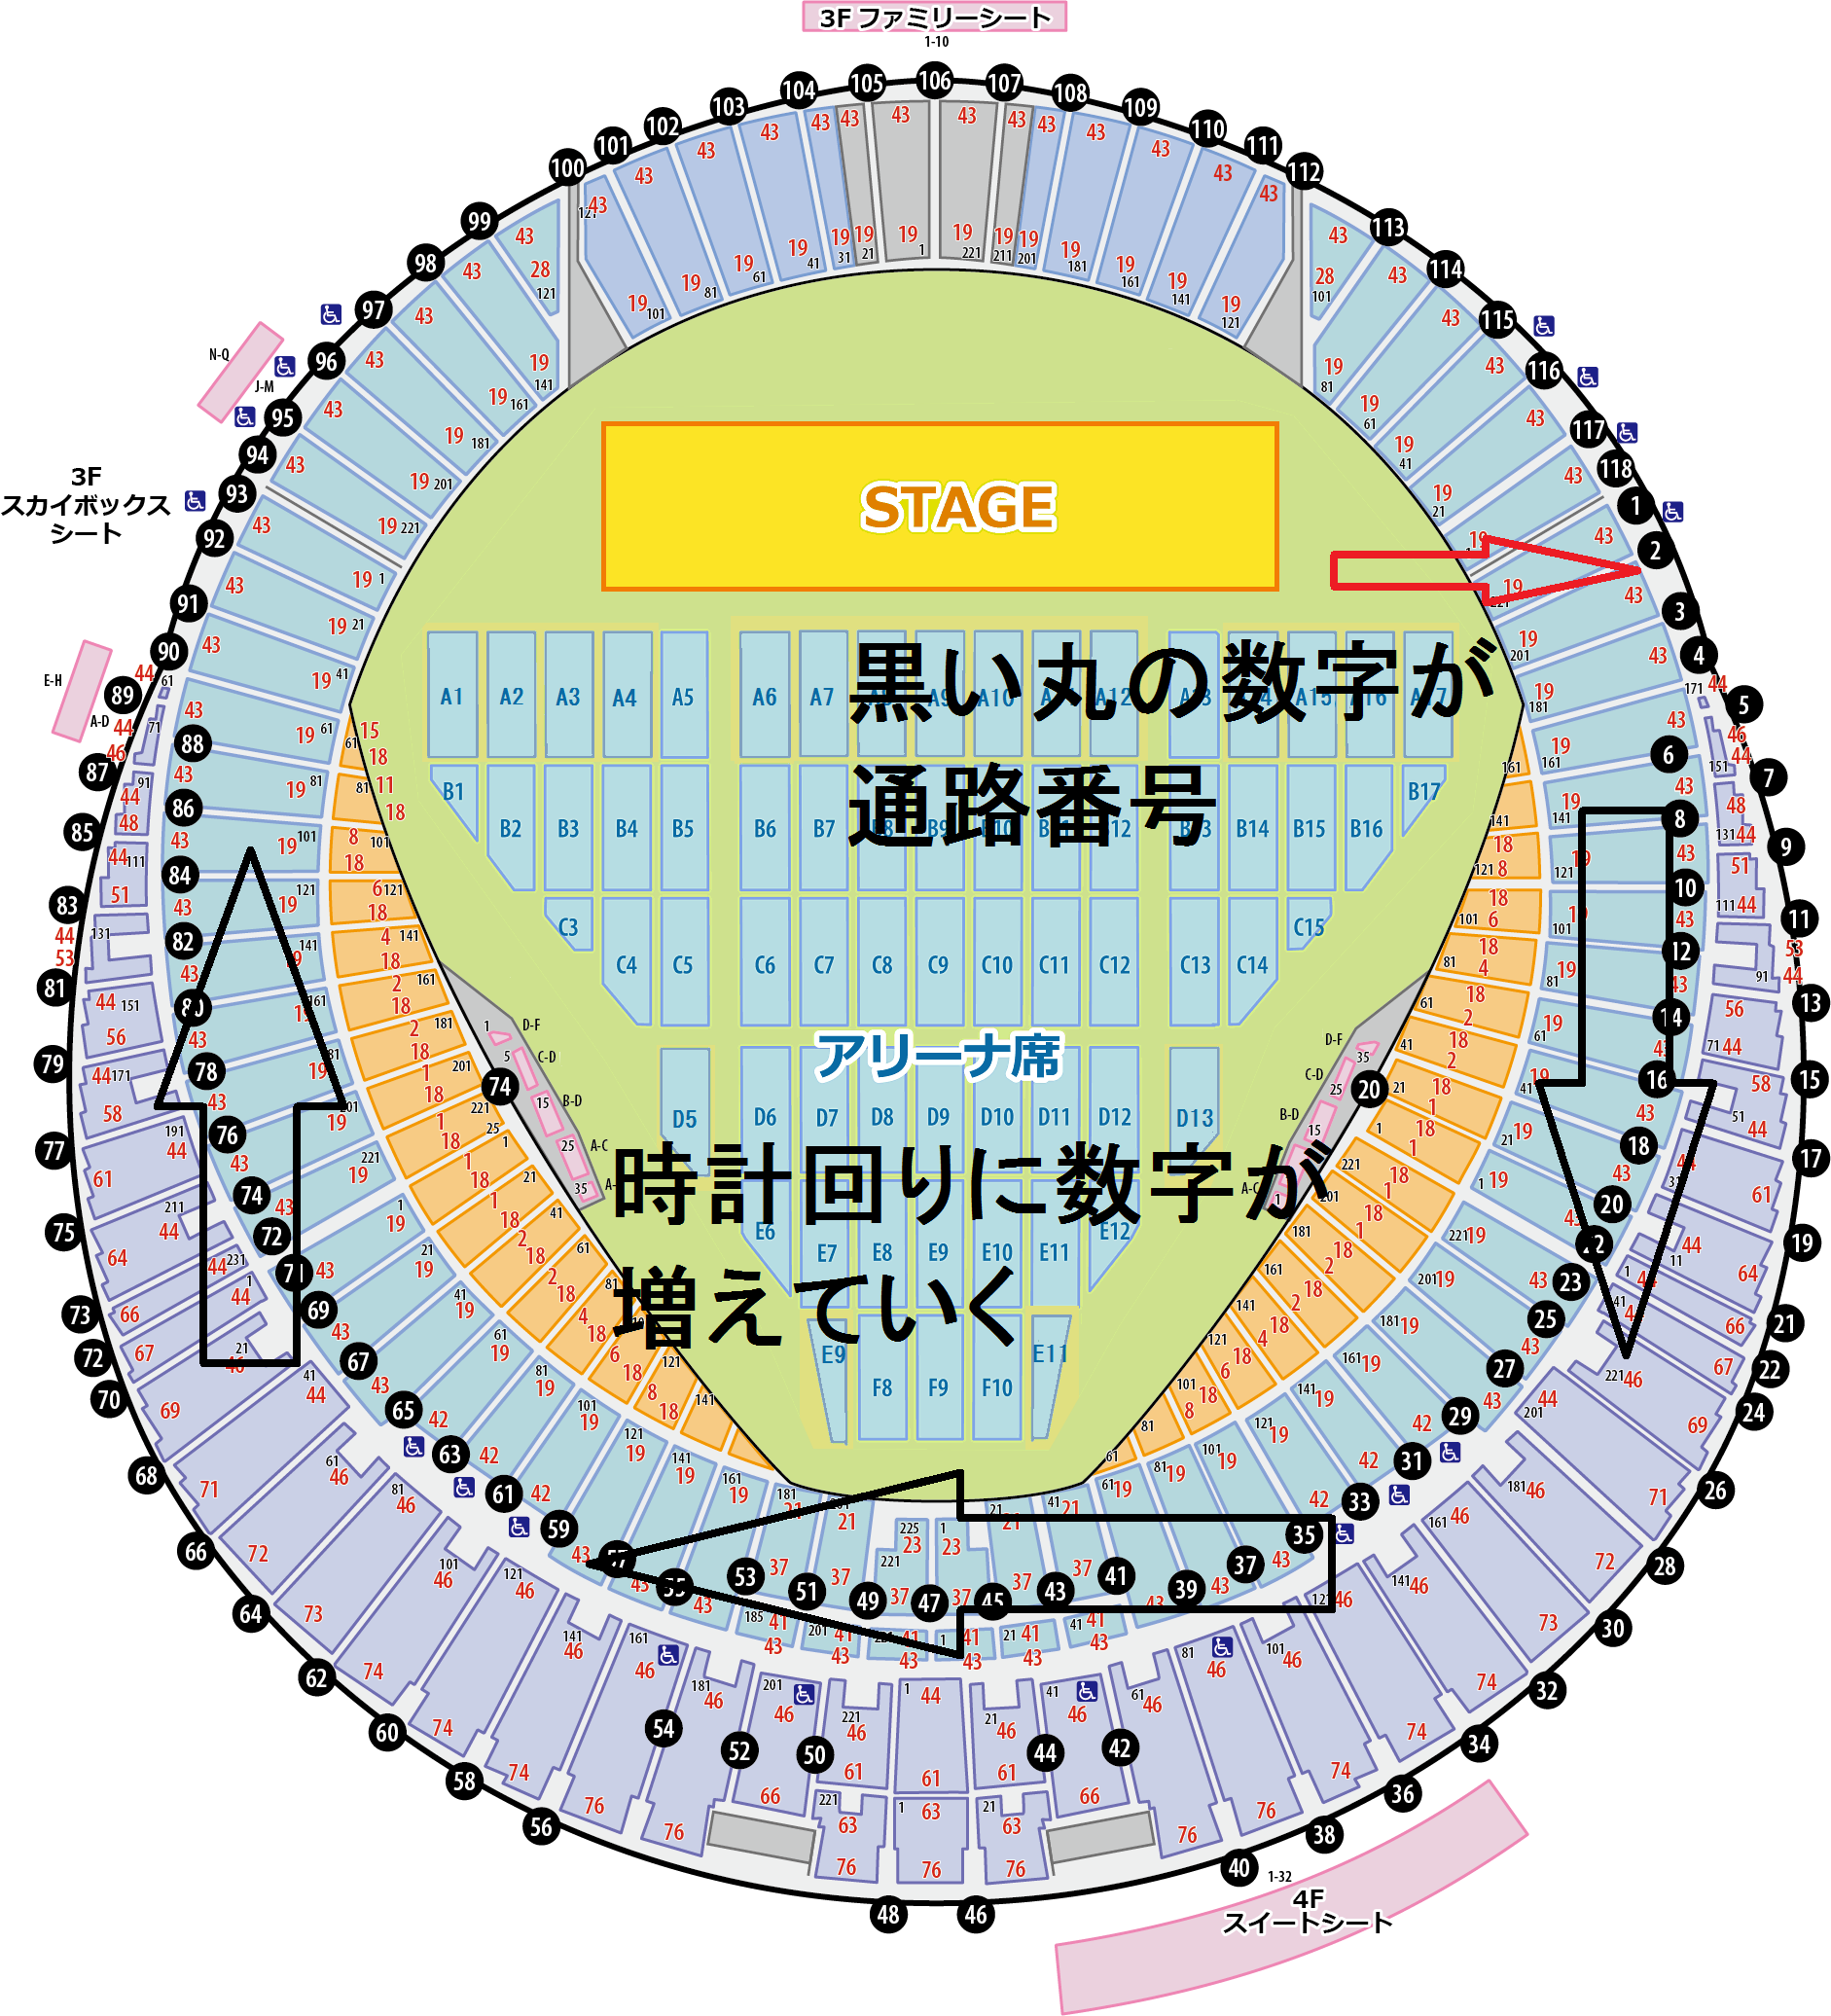 札幌ドーム スタンド席の座席表と見え方 ライブ基地